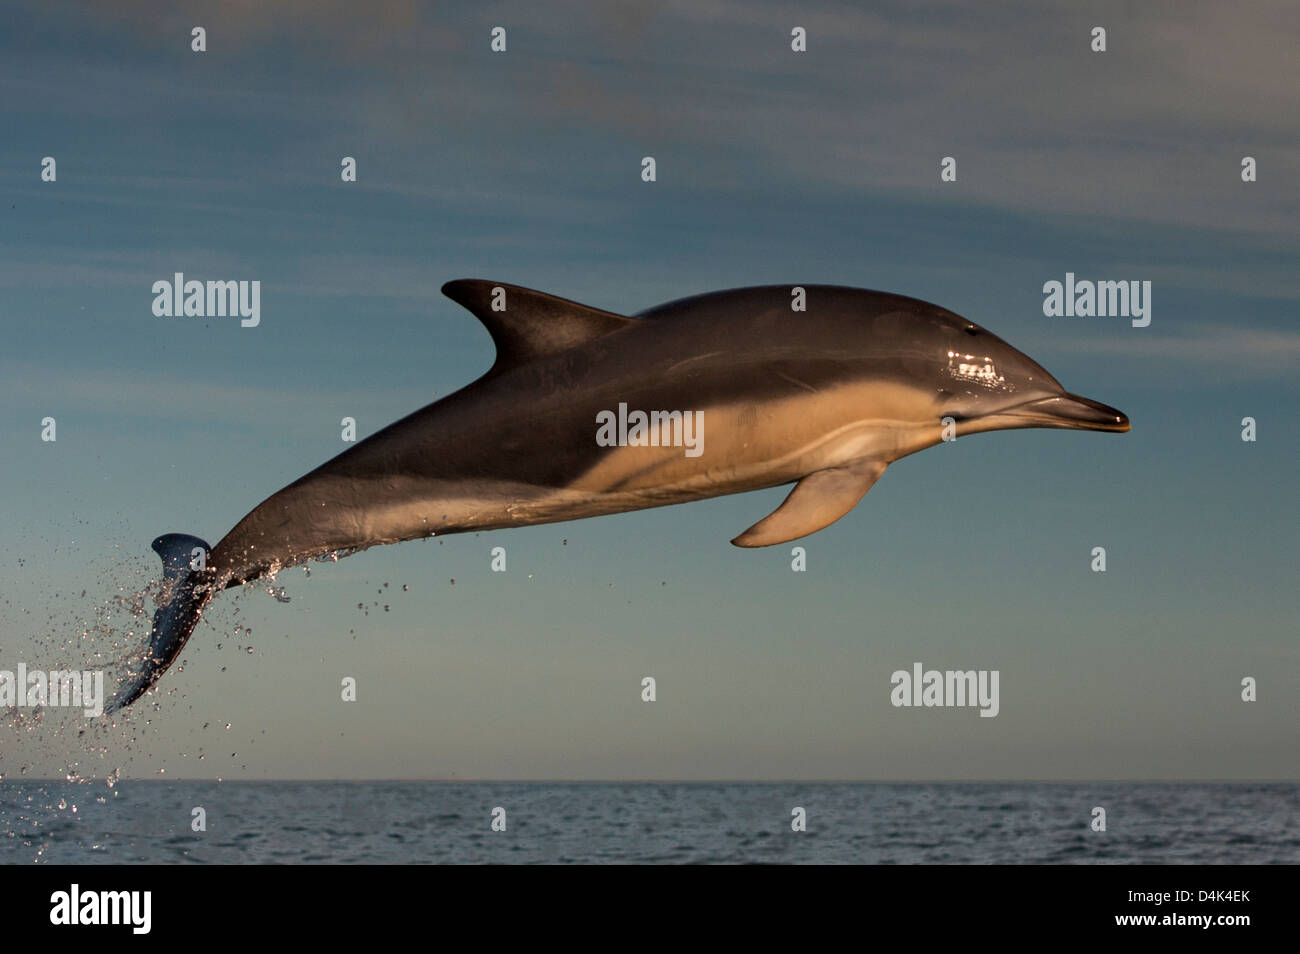 Le saut du dauphin au-dessus de l'eau Banque D'Images